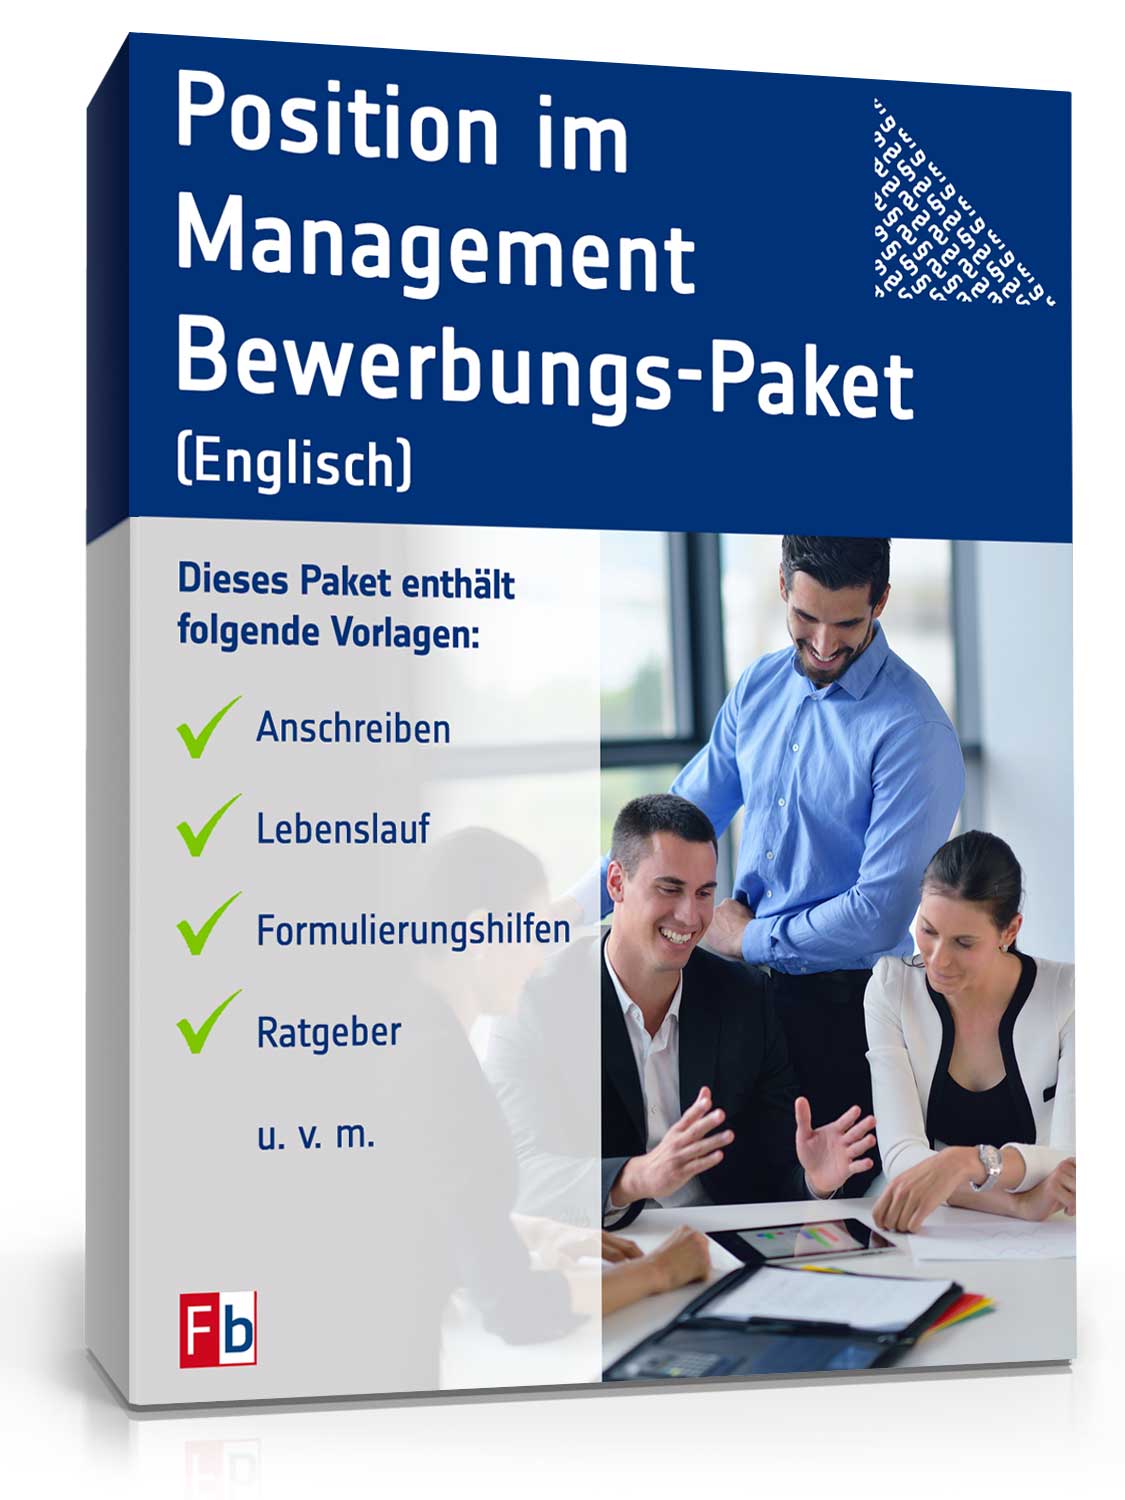 Bewerbungs-Paket Position im Management (Englisch)